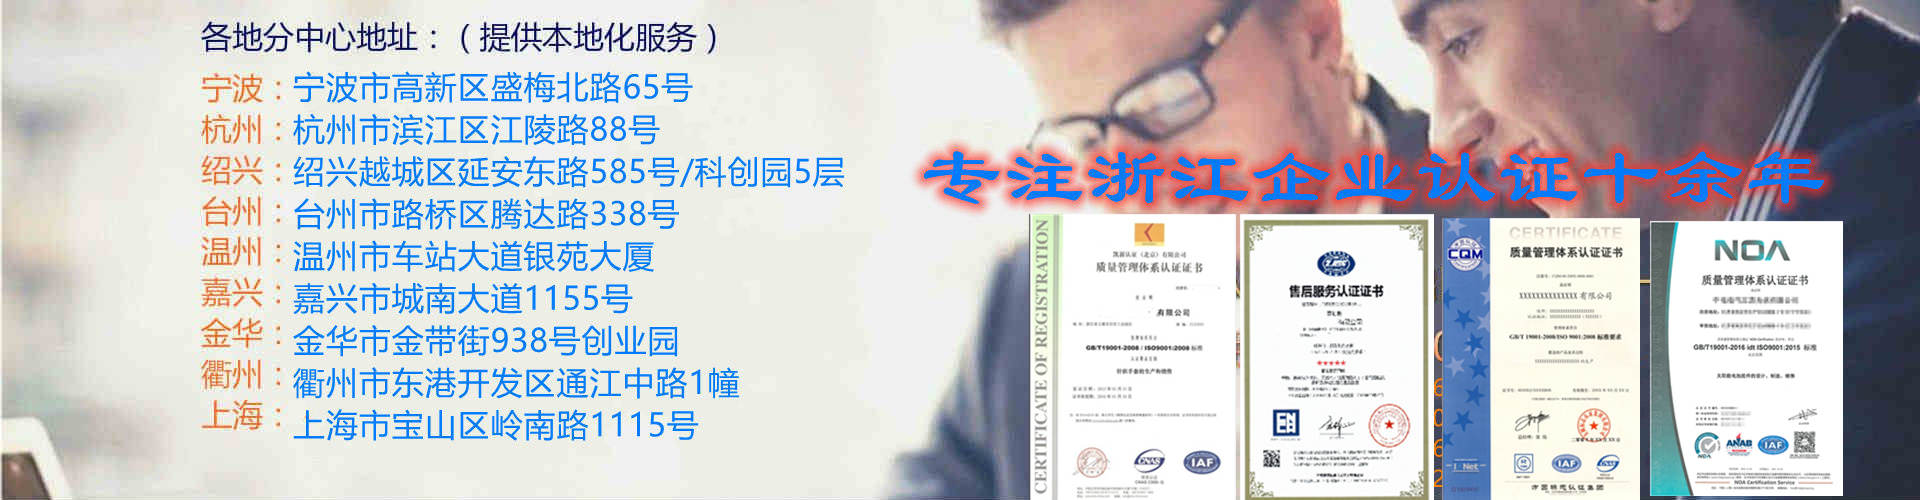 杭州ISO9000认证 杭州本地费用 办理流程